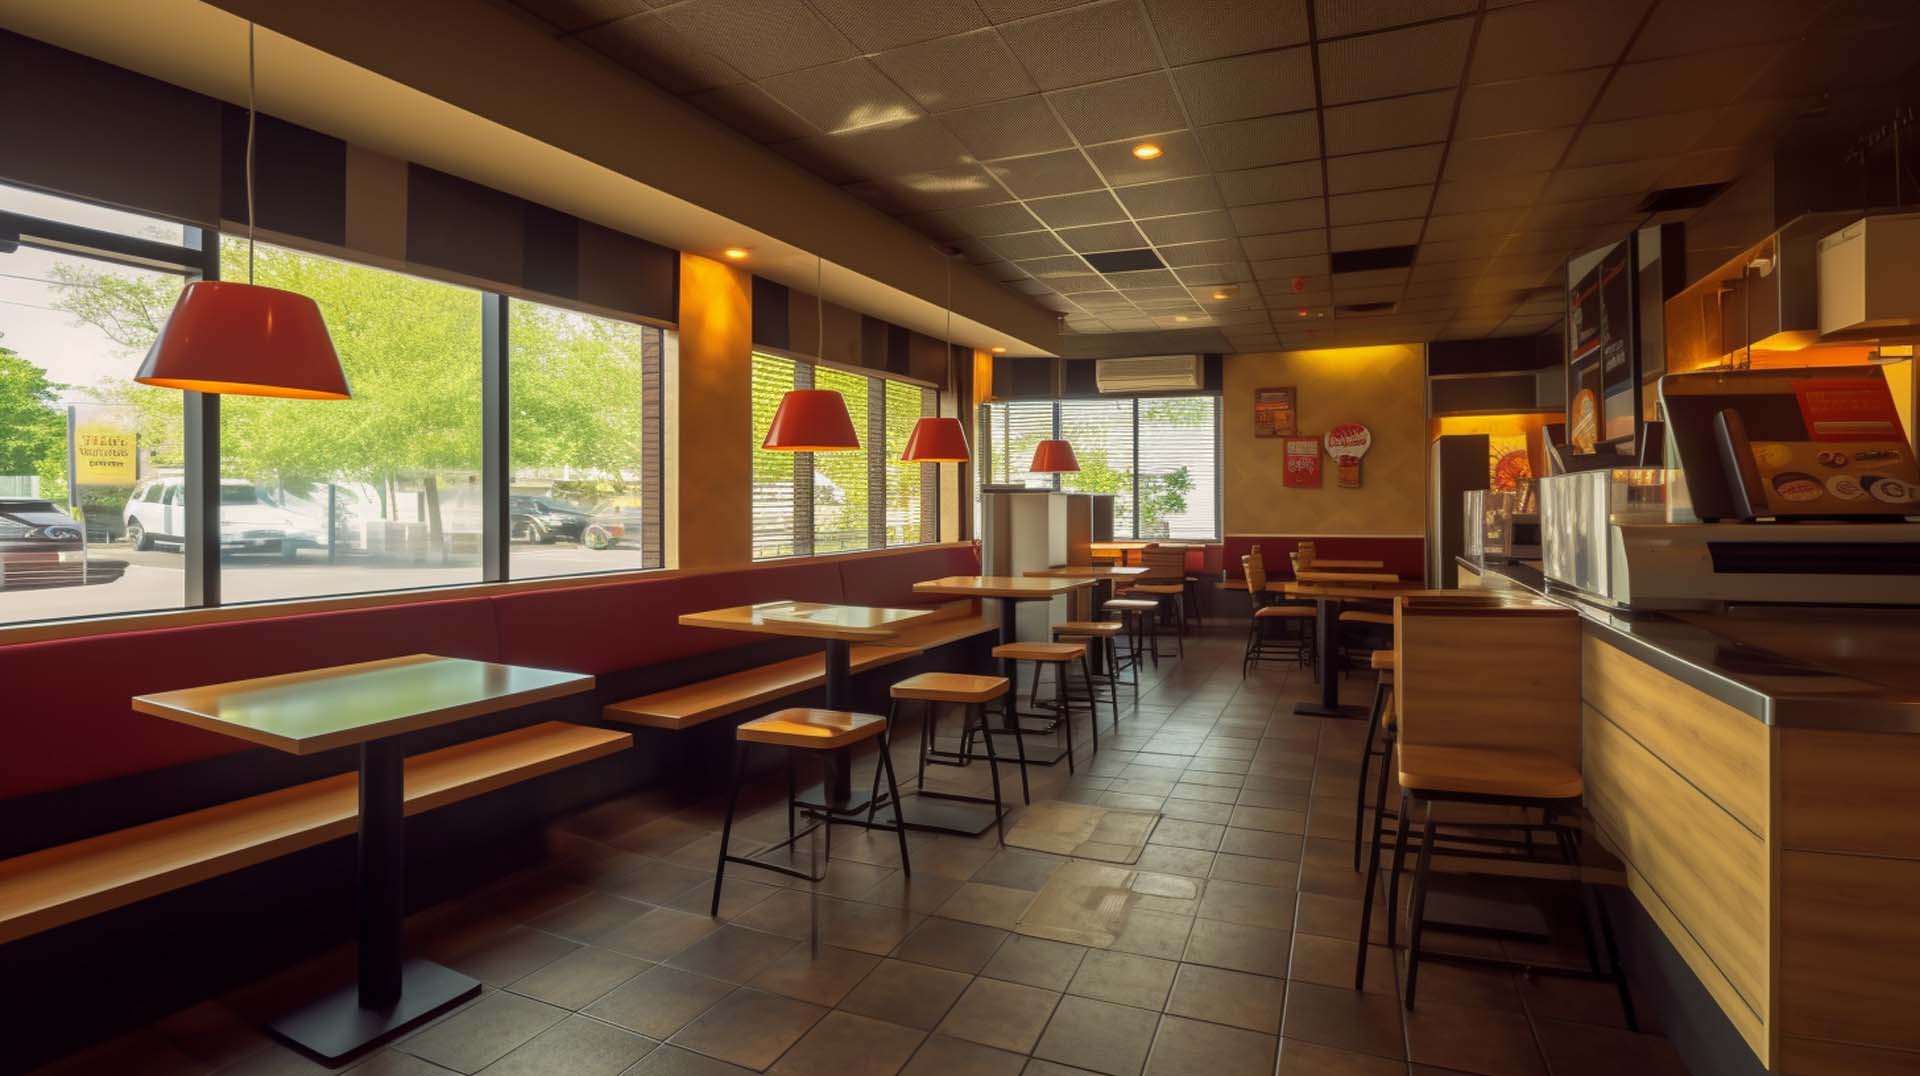 Popular Fast Food Restaurants in Medford